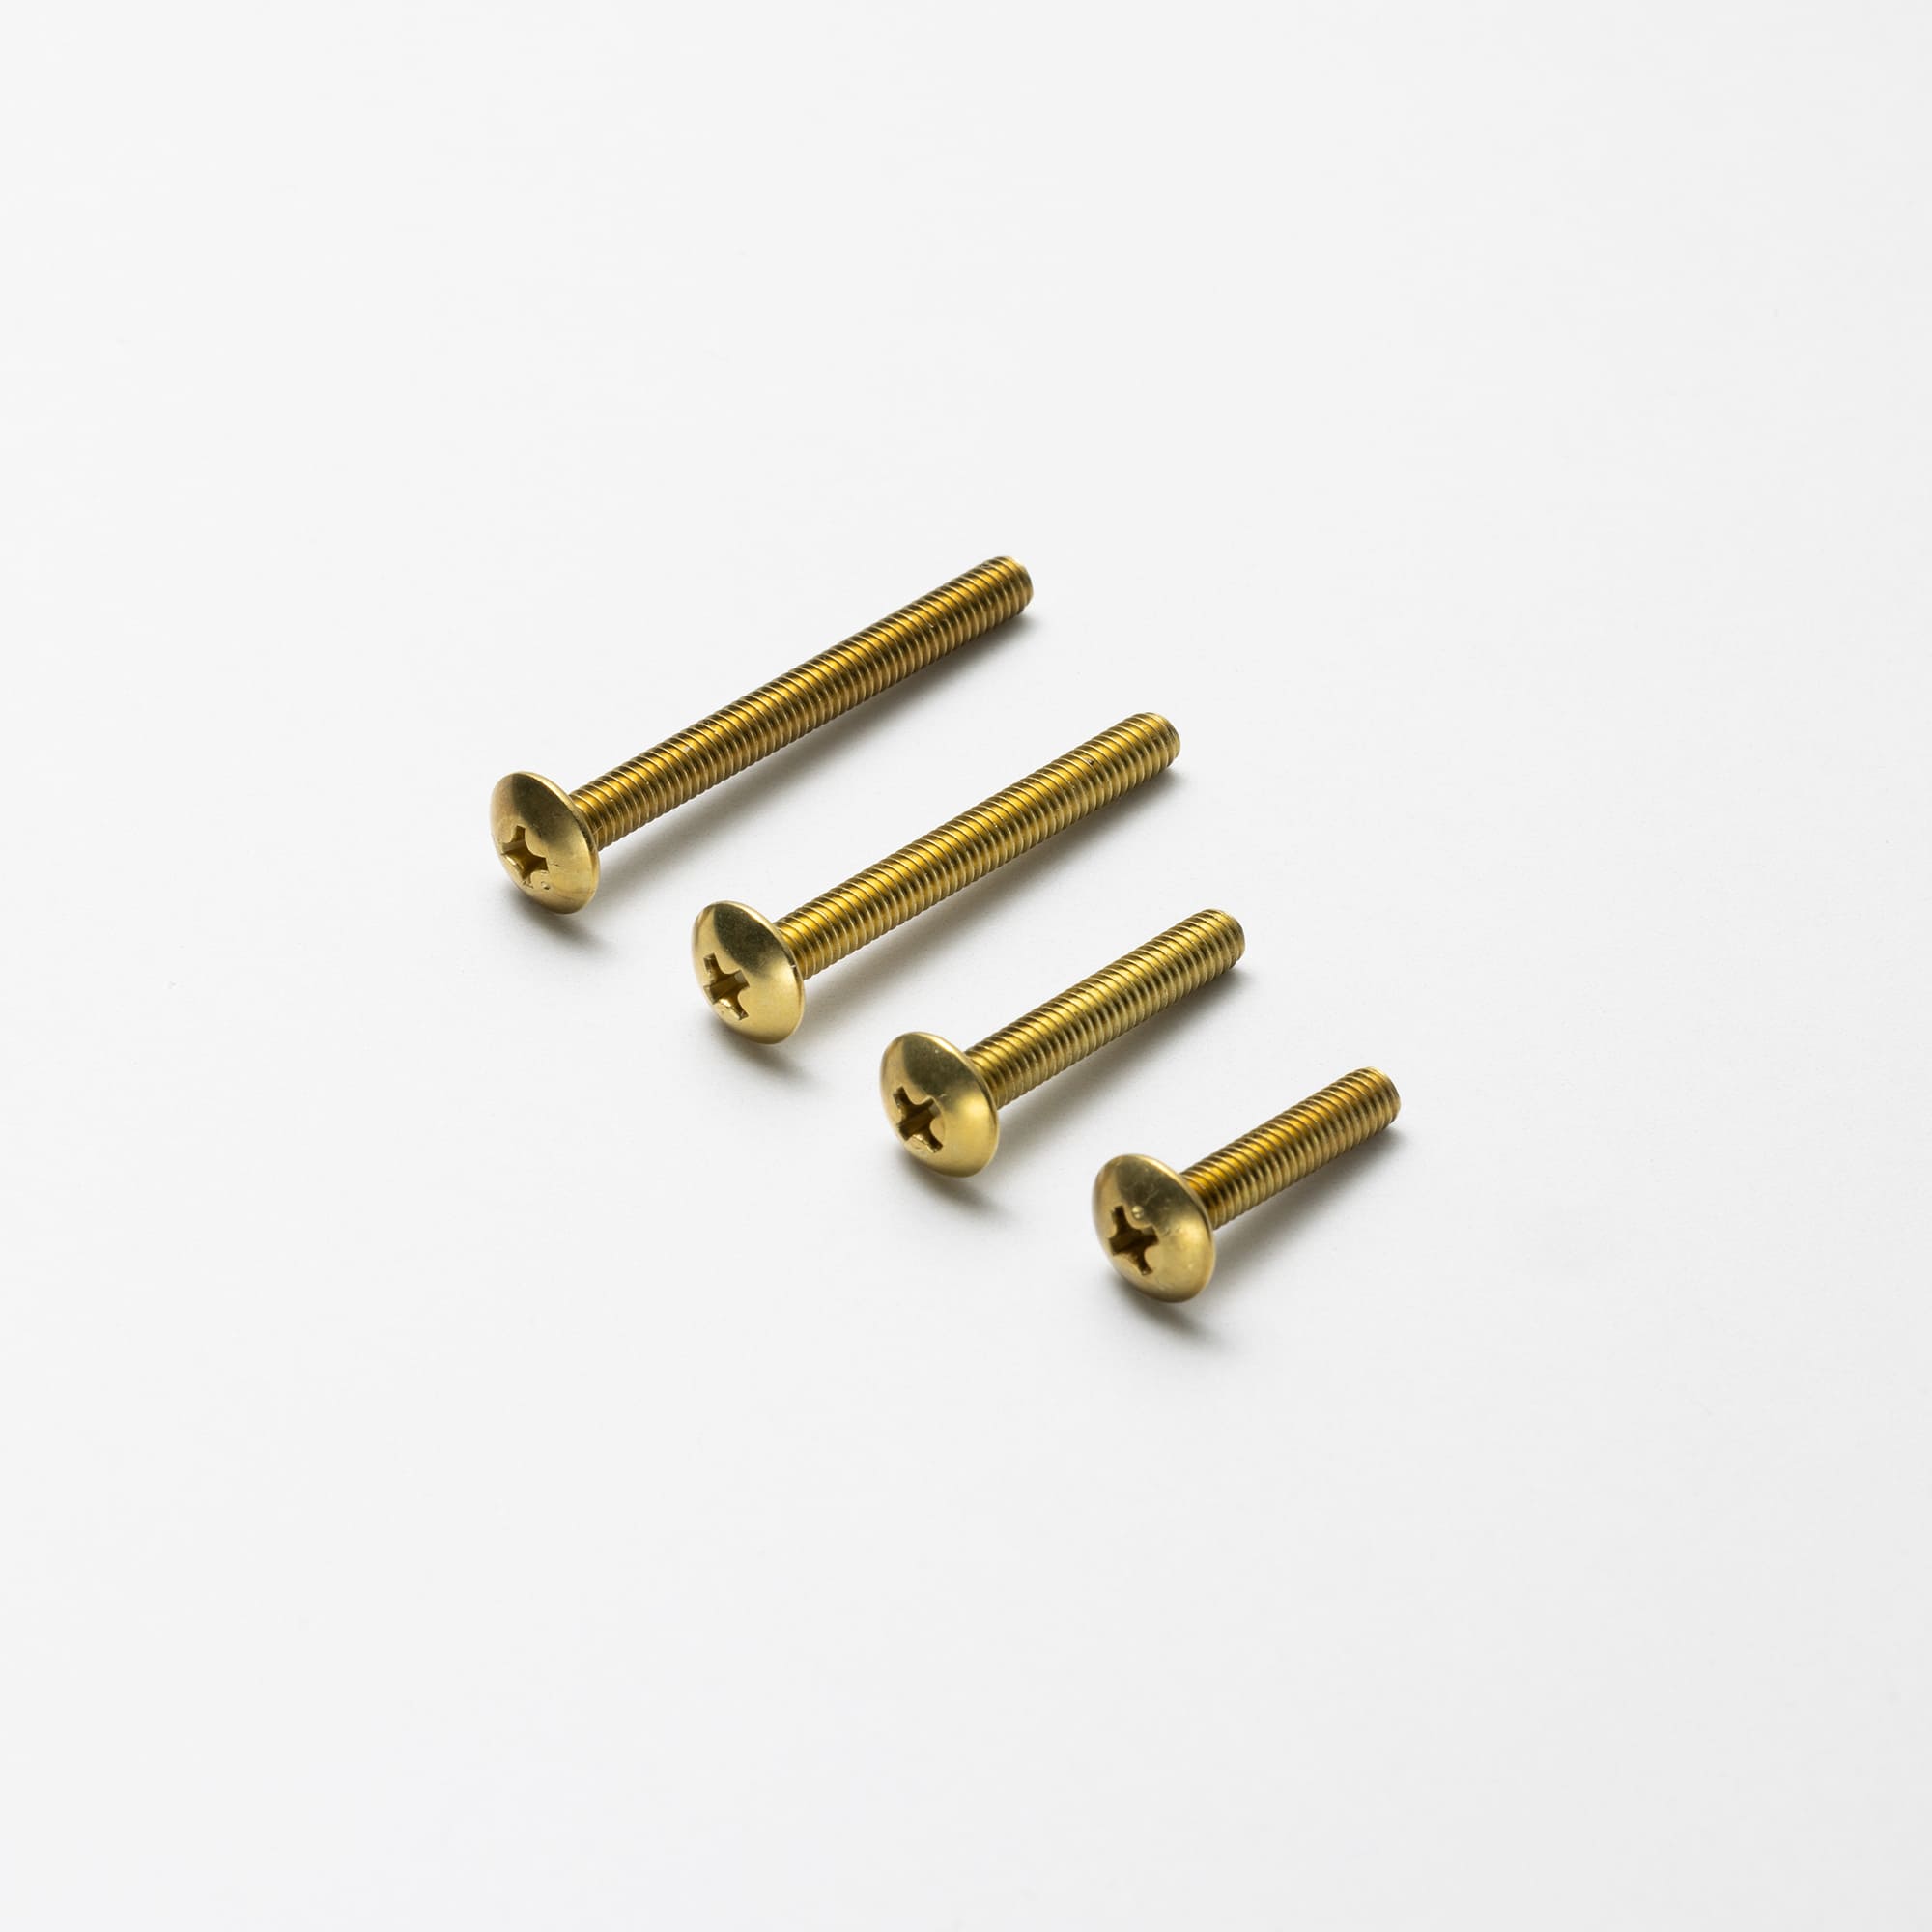 真鍮金物 とって六角棒コの字 PS-HD001-07-G043 取っ手・つまみ パーツ・ハードウェア toolbox